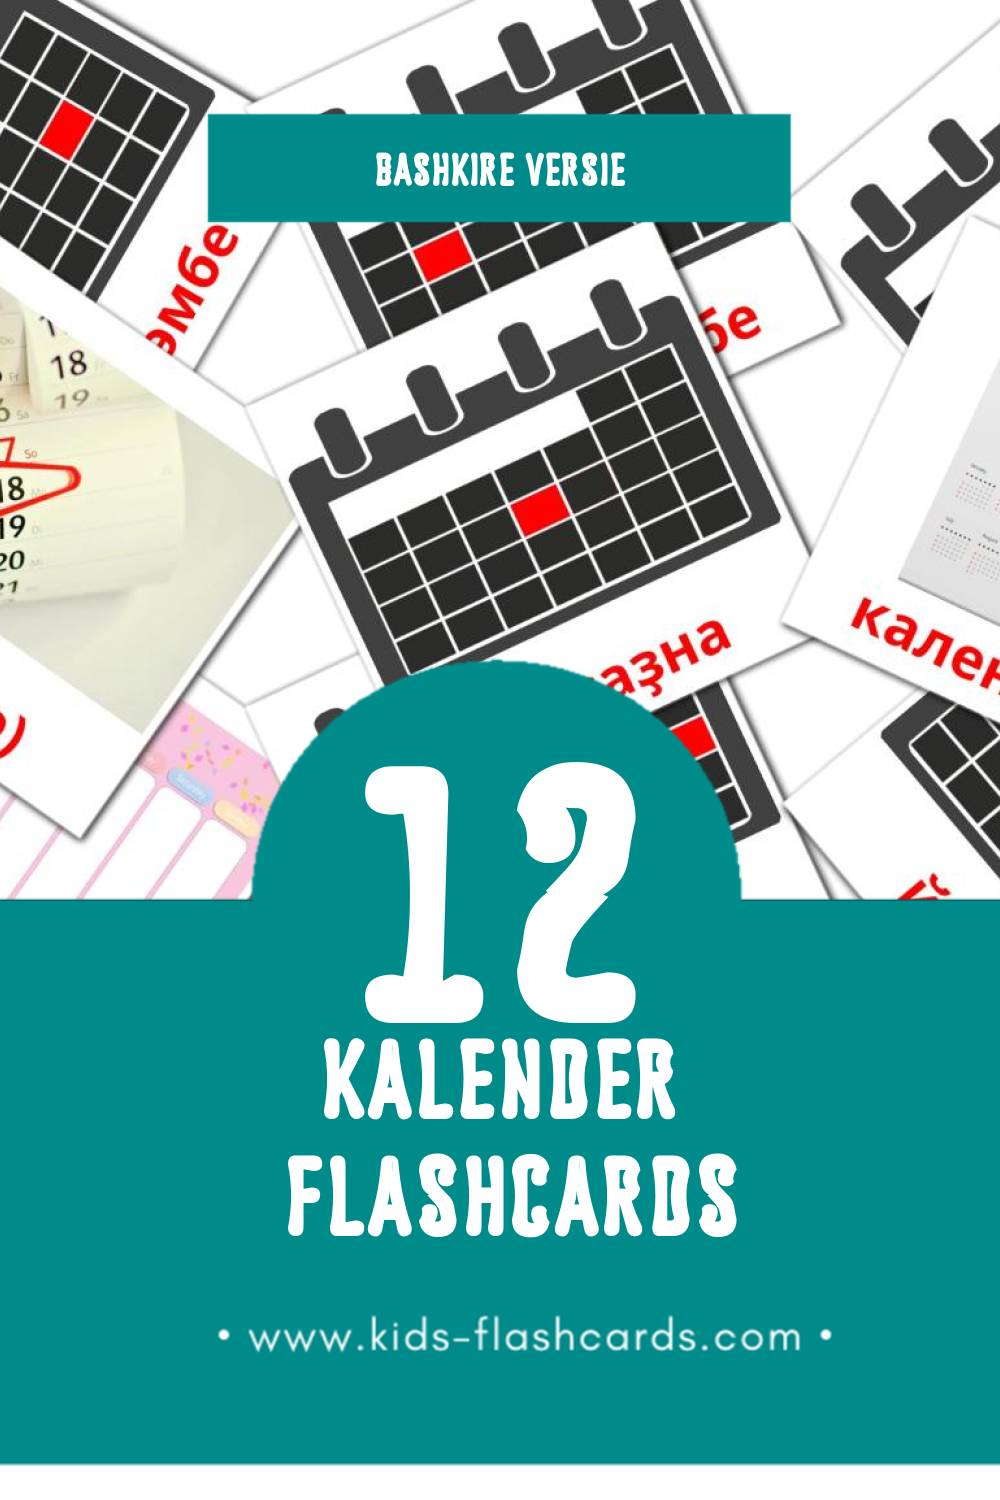 Visuele календарь Flashcards voor Kleuters (24 kaarten in het Bashkir)